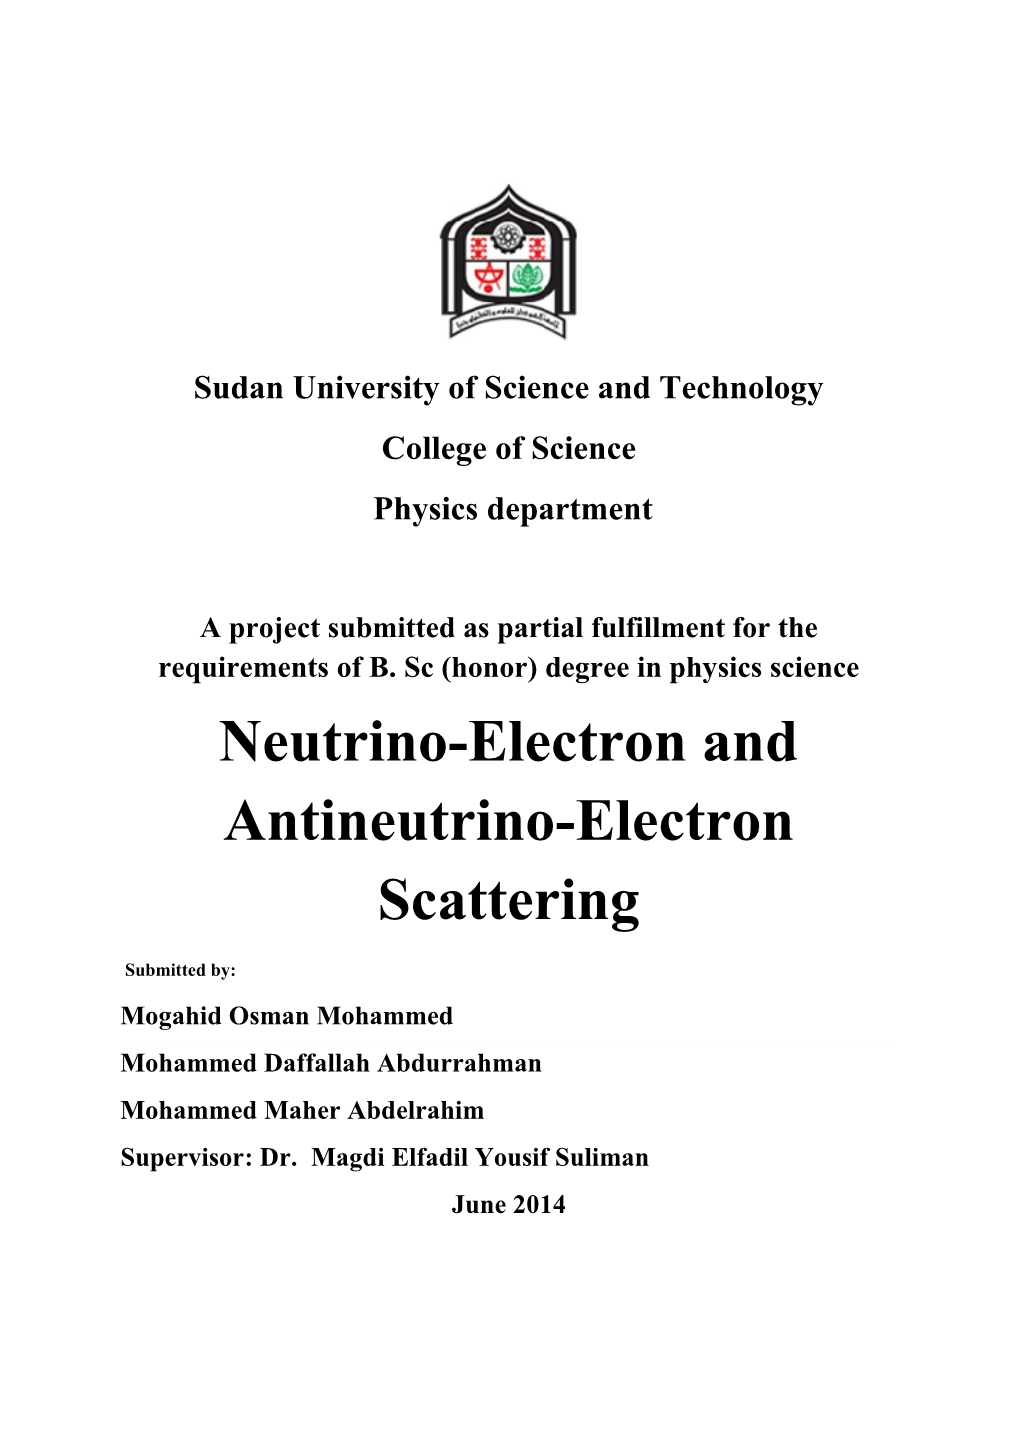 Neutrino-Electron and Antineutrino-Electron Scattering